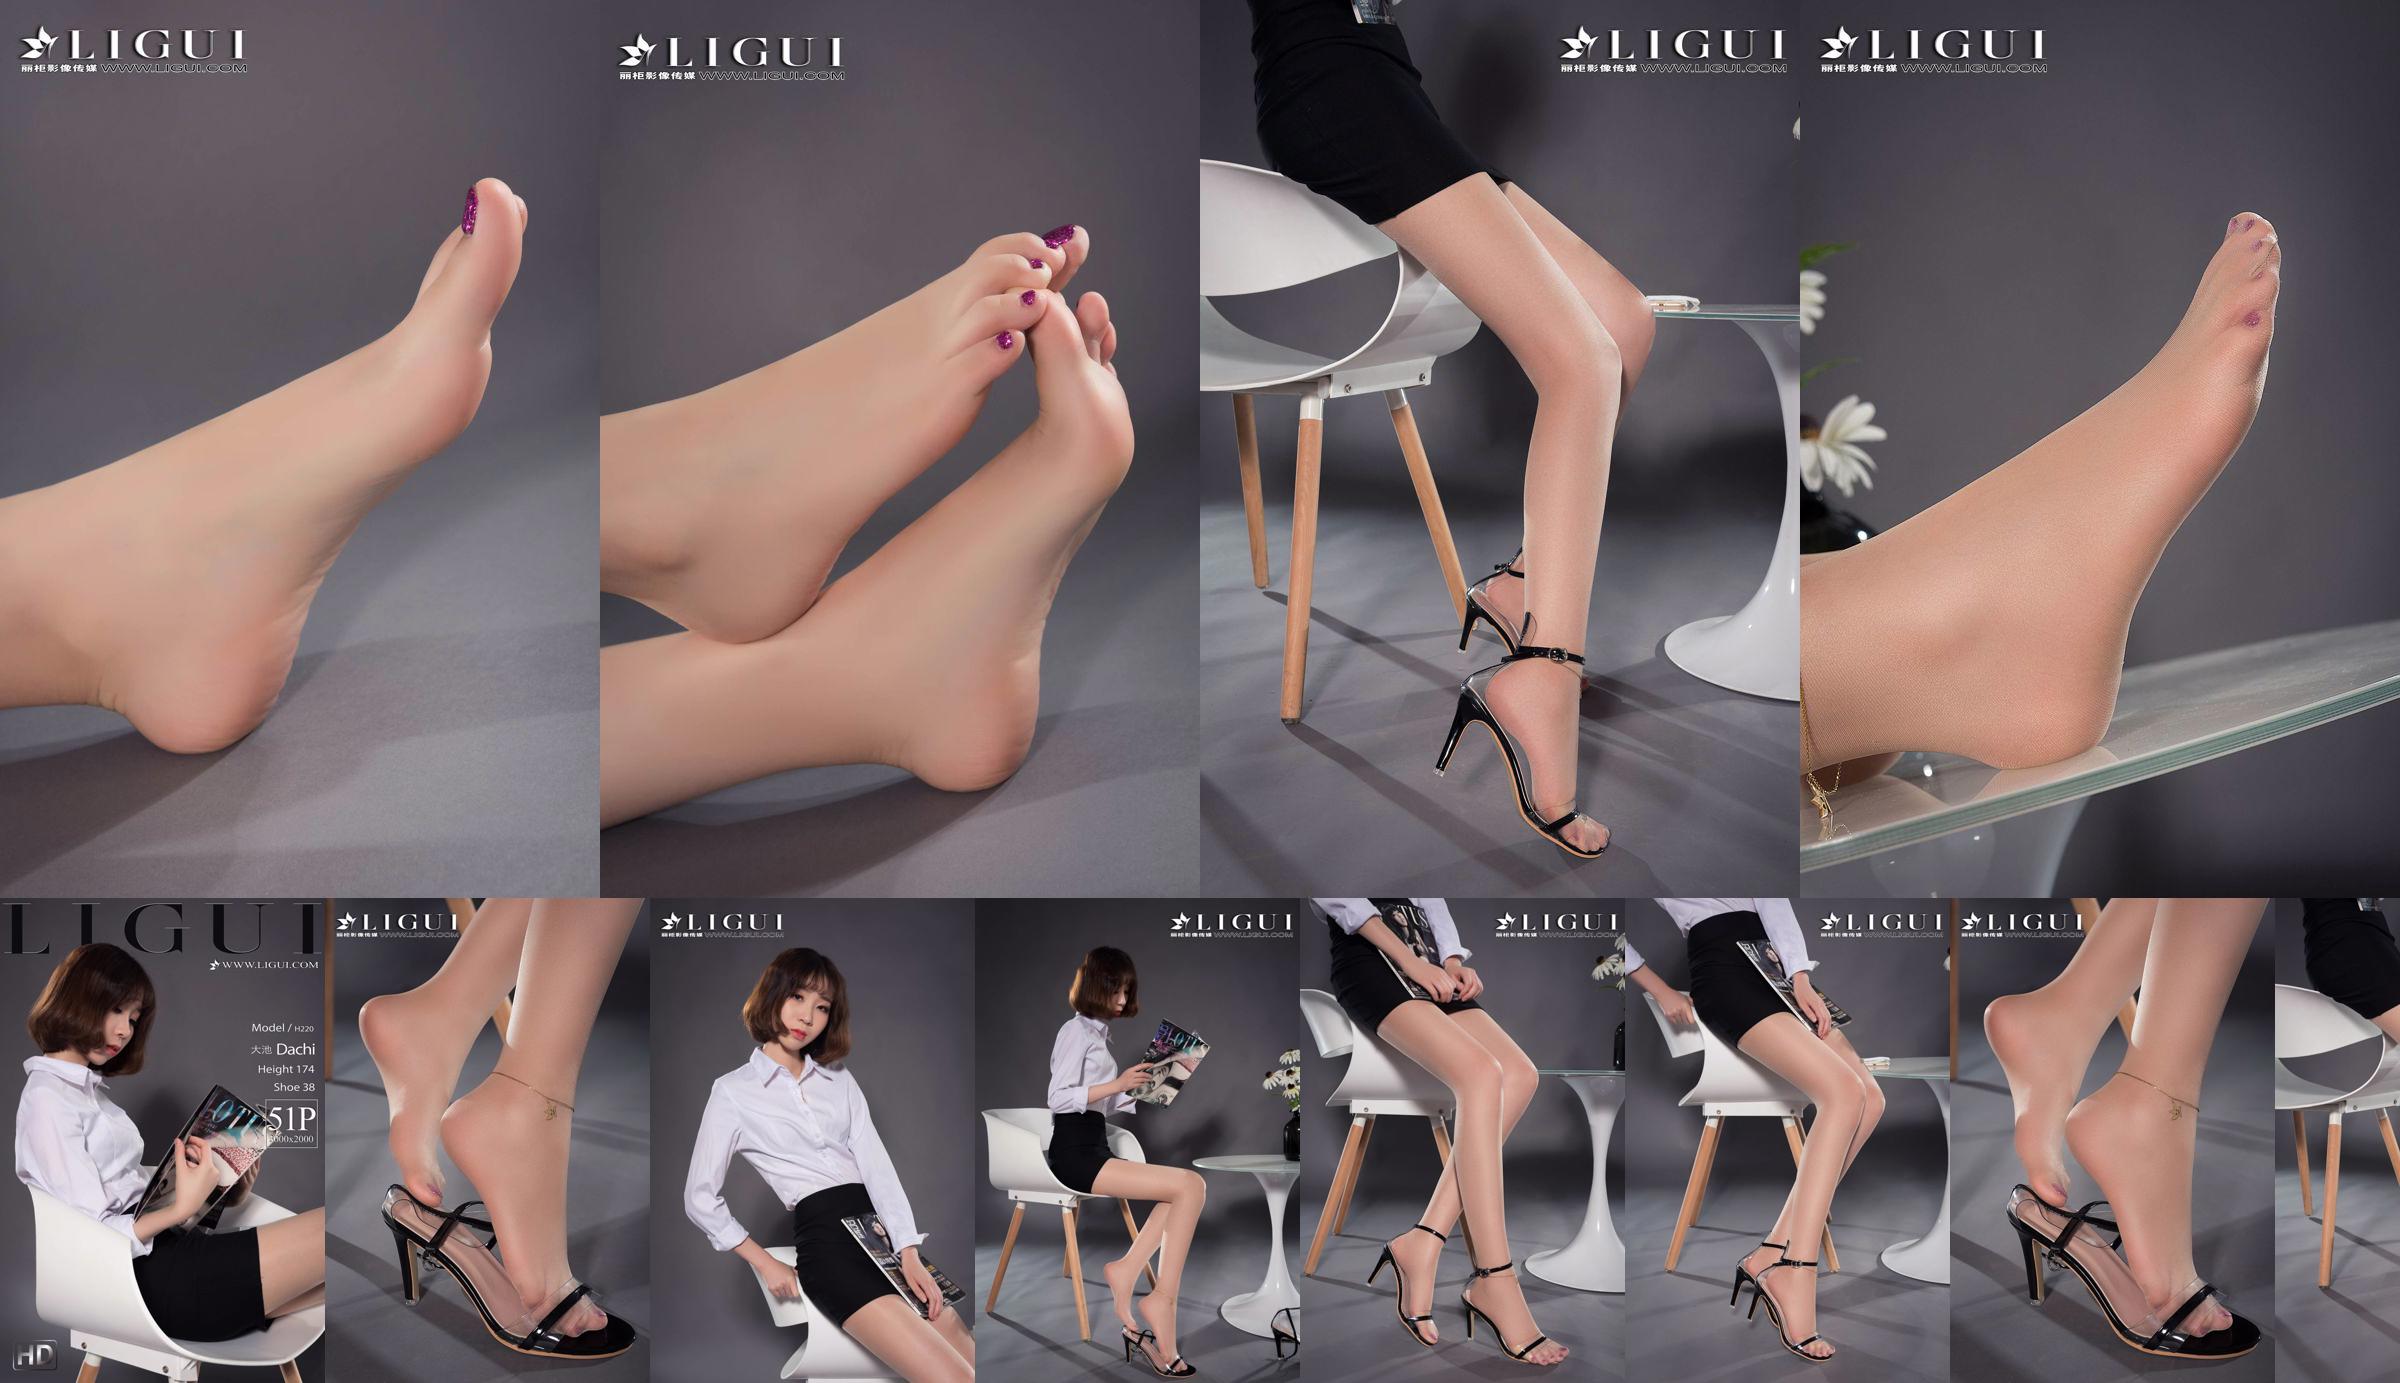 Người mẫu chân Oike "Heo với giày cao gót CV" [Ligui Ligui] Vẻ đẹp Internet No.ab4e97 Trang 1